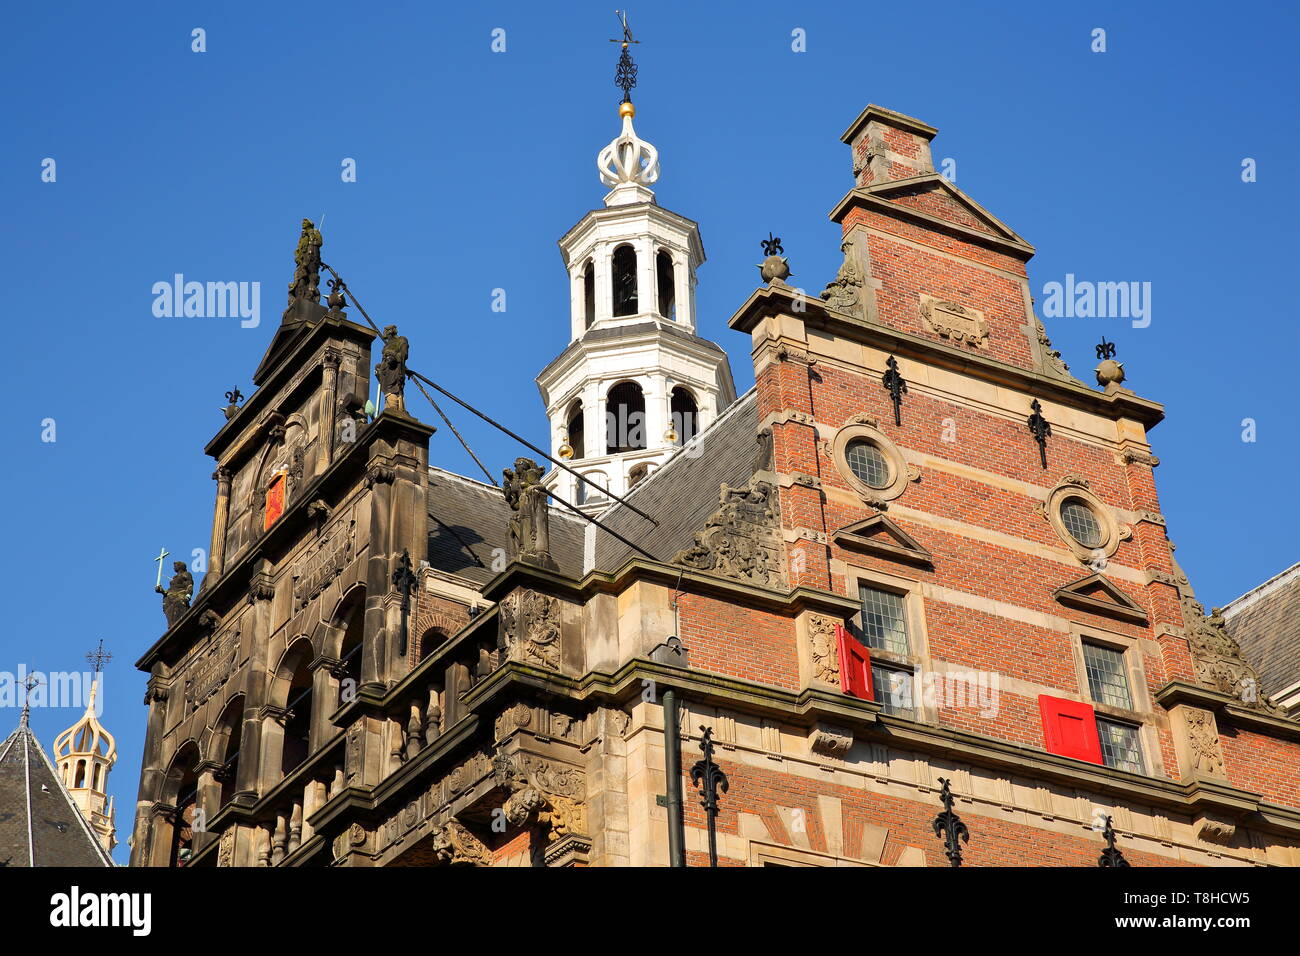 La façade extérieure de l'Oude Stadhuis, et l'horloge de Grote of Sint Jacobskerk en arrière-plan, La Haye, Pays-Bas Banque D'Images